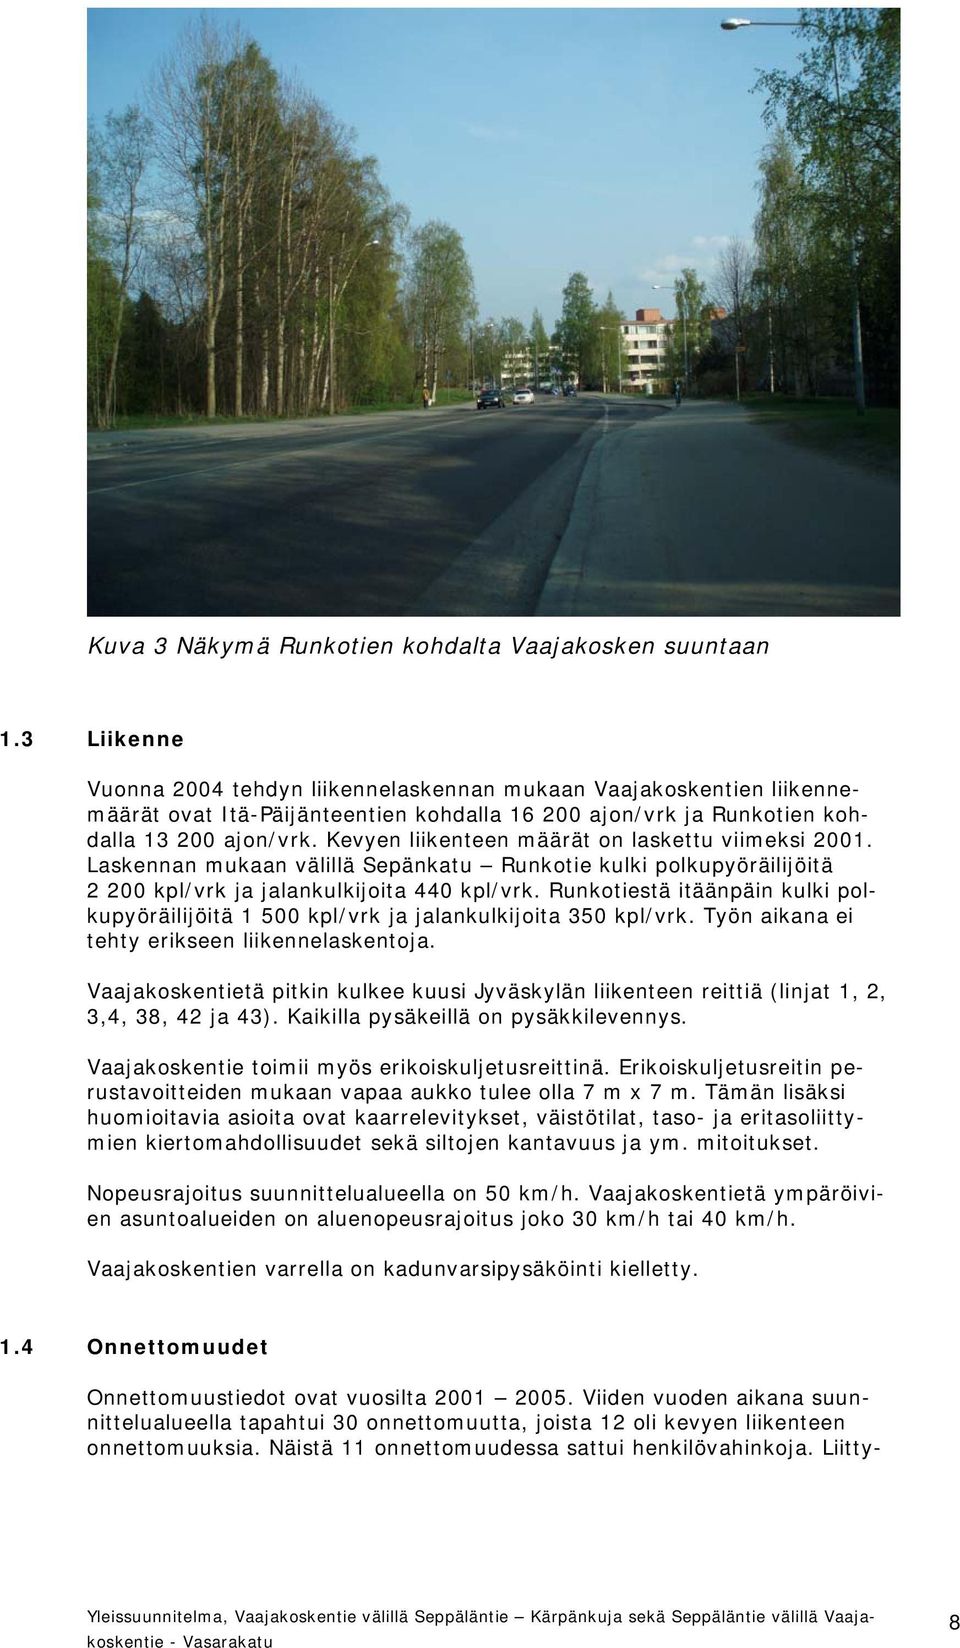 Kevyen liikenteen määrät on laskettu viimeksi 2001. Laskennan mukaan välillä Sepänkatu Runkotie kulki polkupyöräilijöitä 2 200 kpl/vrk ja jalankulkijoita 440 kpl/vrk.